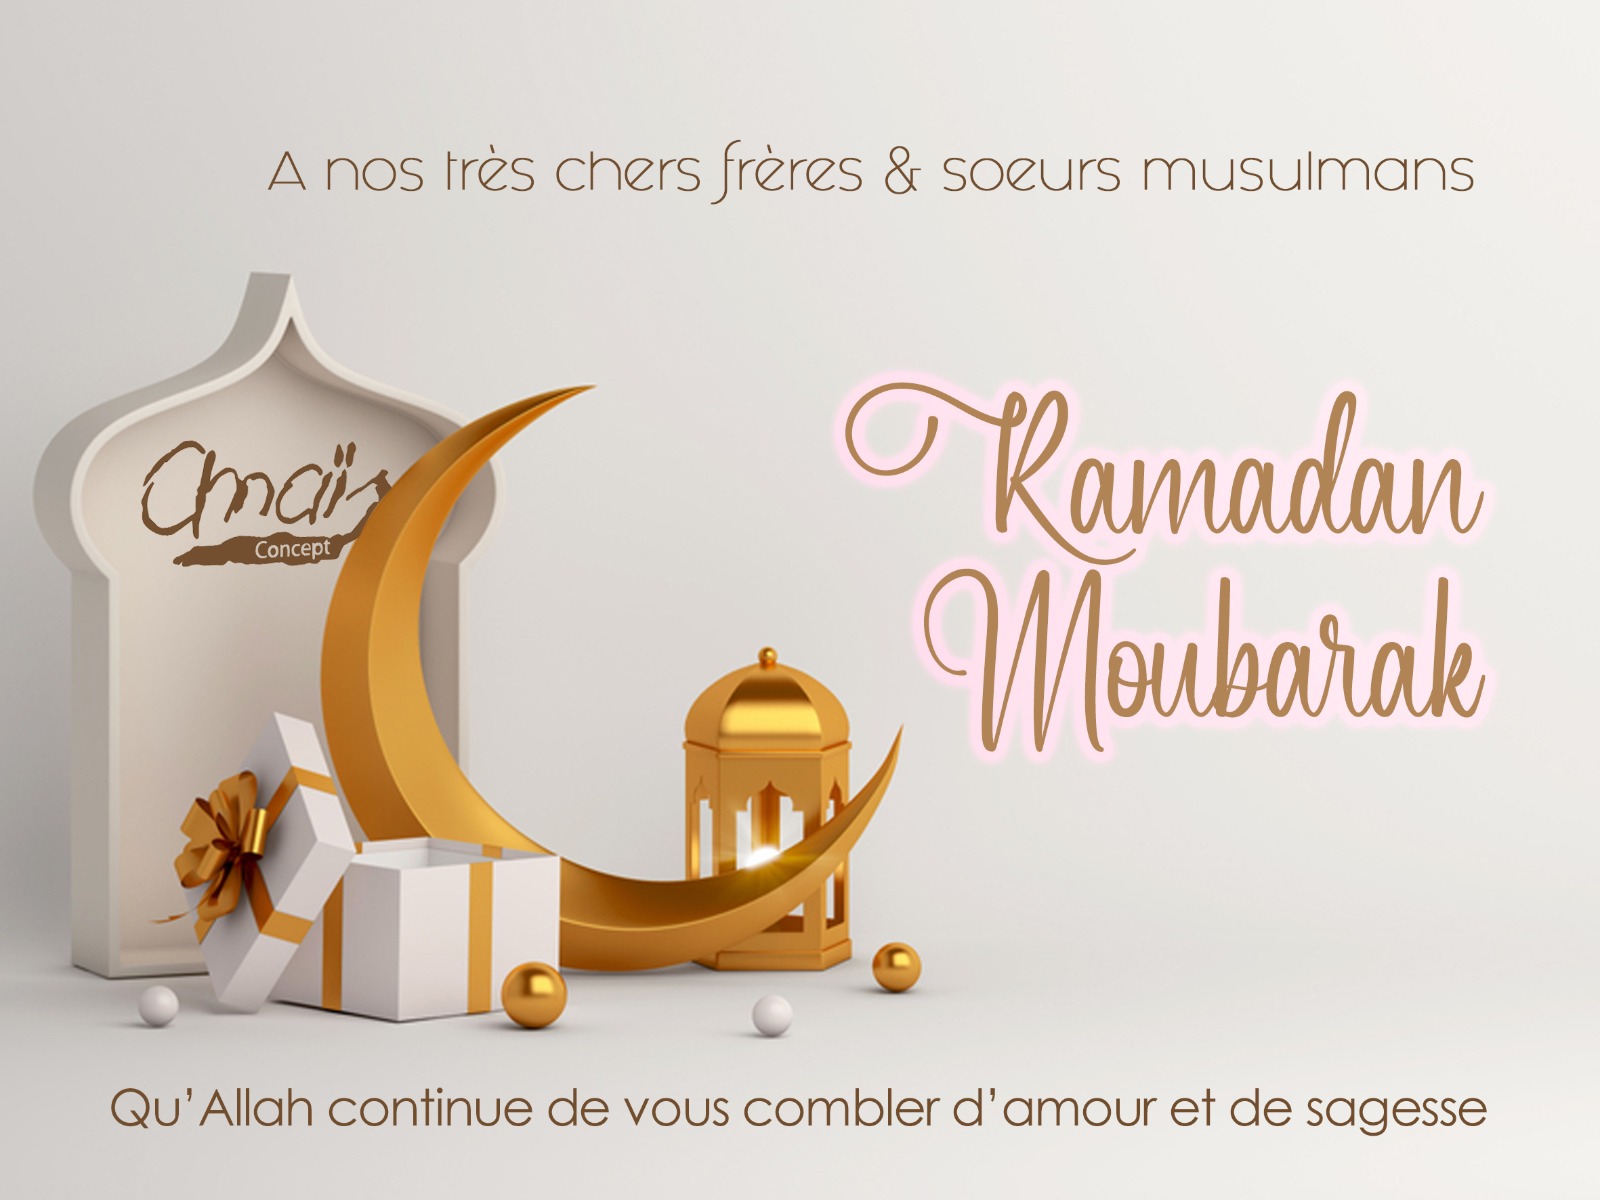 Notre message pour le Ramadan